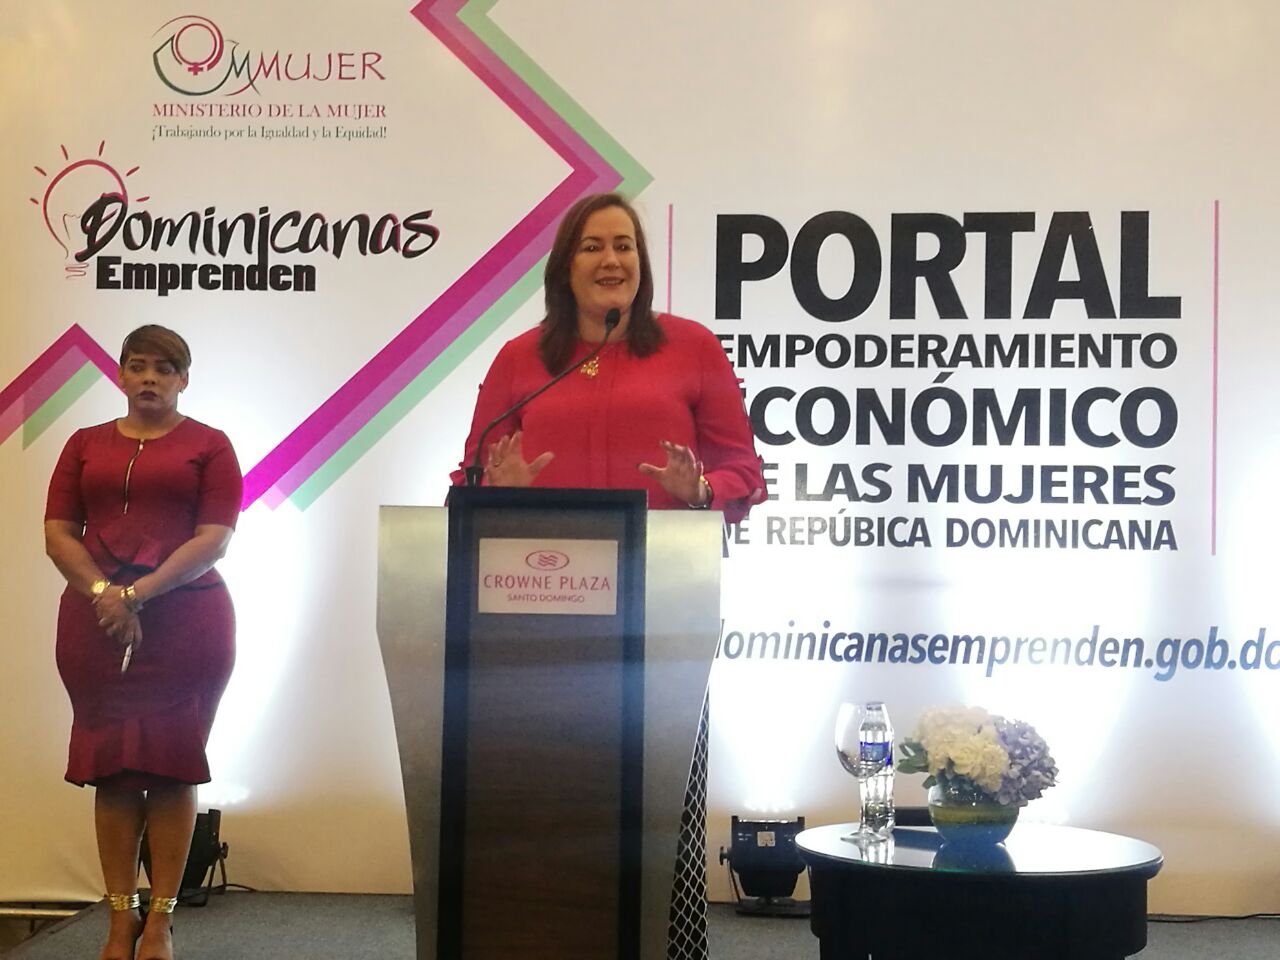  El Ministerio de la Mujer presentó formalmente el portal Dominicana Emprende